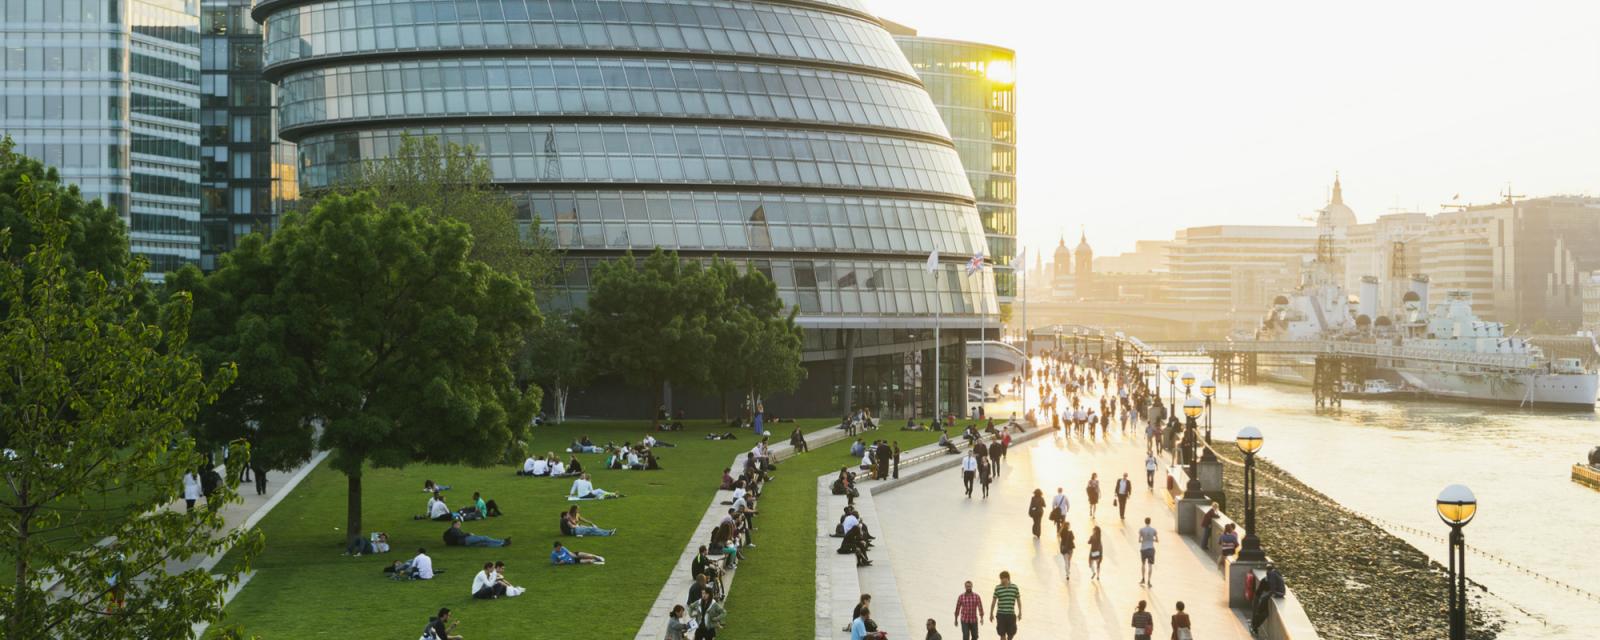 Mijn stedentrip: verslaafd aan Londen - CityZapper 